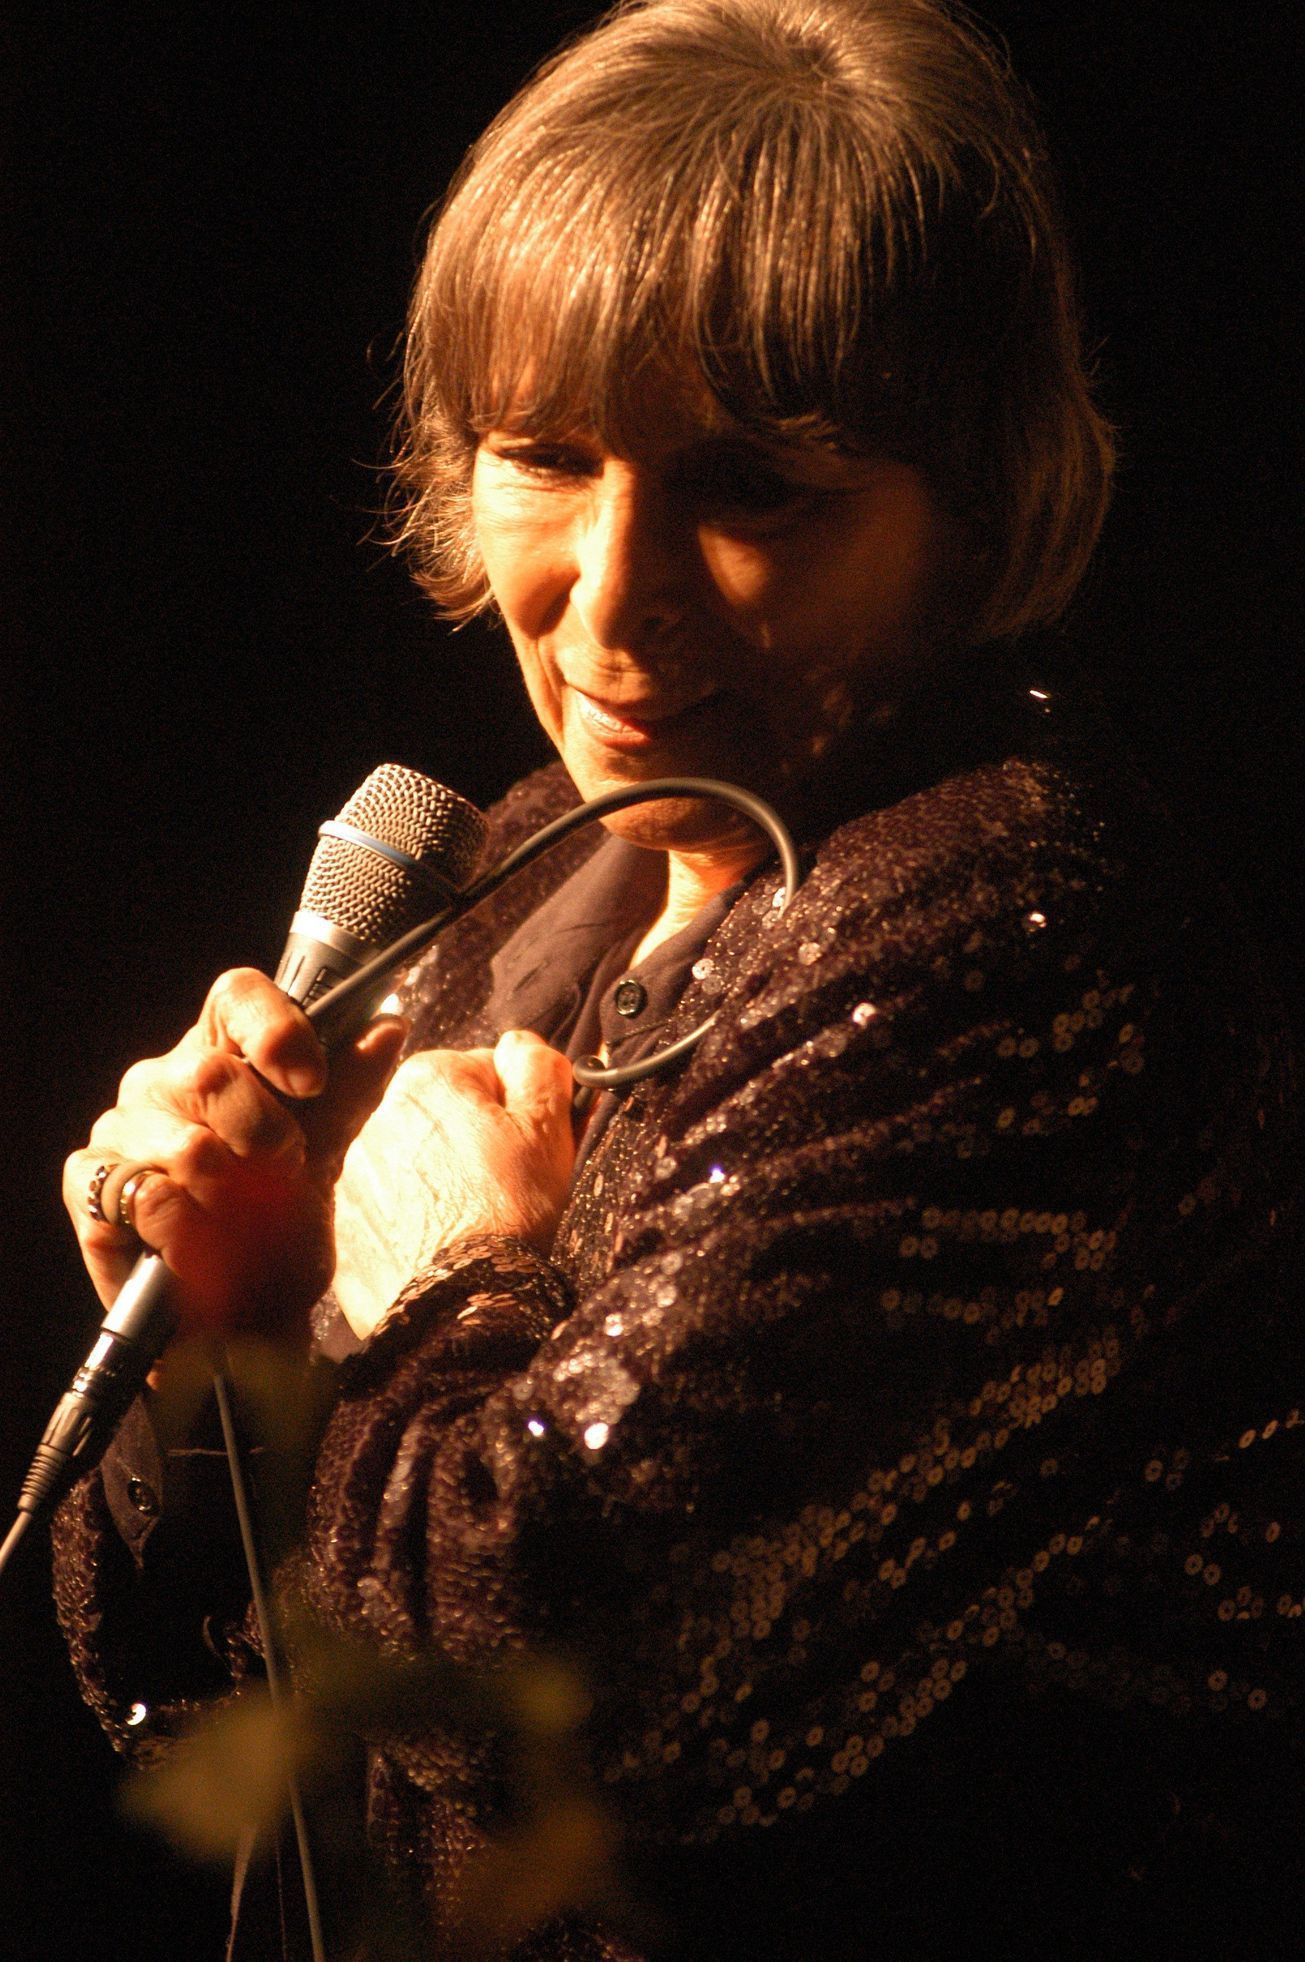 Hana Hegerová, 2003